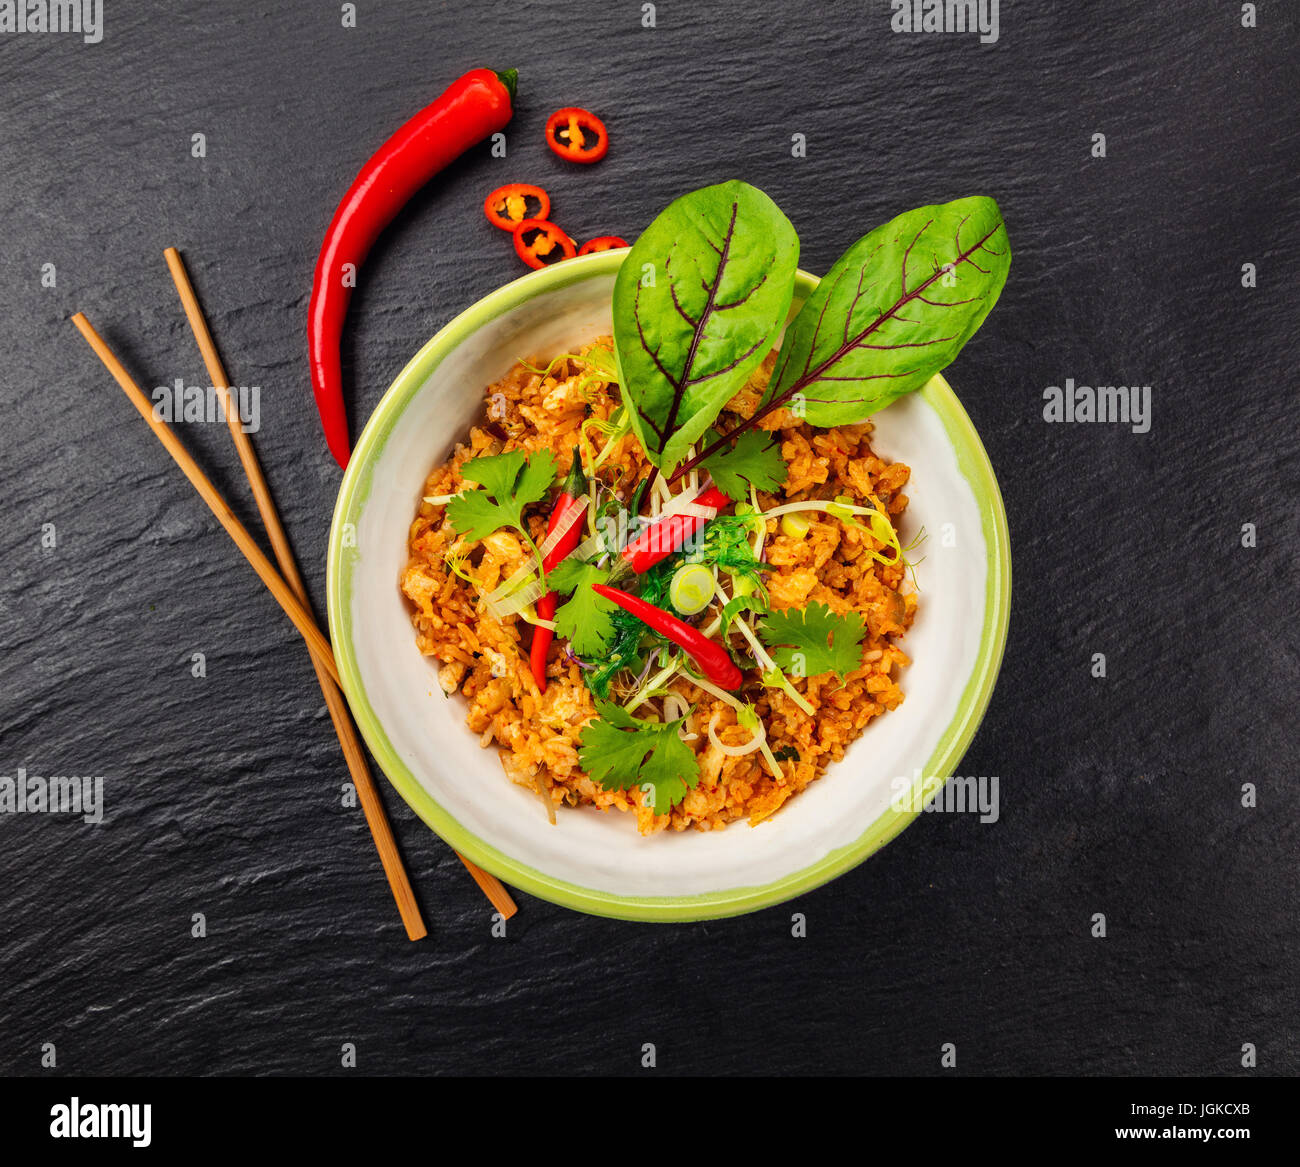 Asiatischen Huhn und Garnelen curry mit Reis, Draufsicht, serviert auf schwarzem Stein. Stockfoto